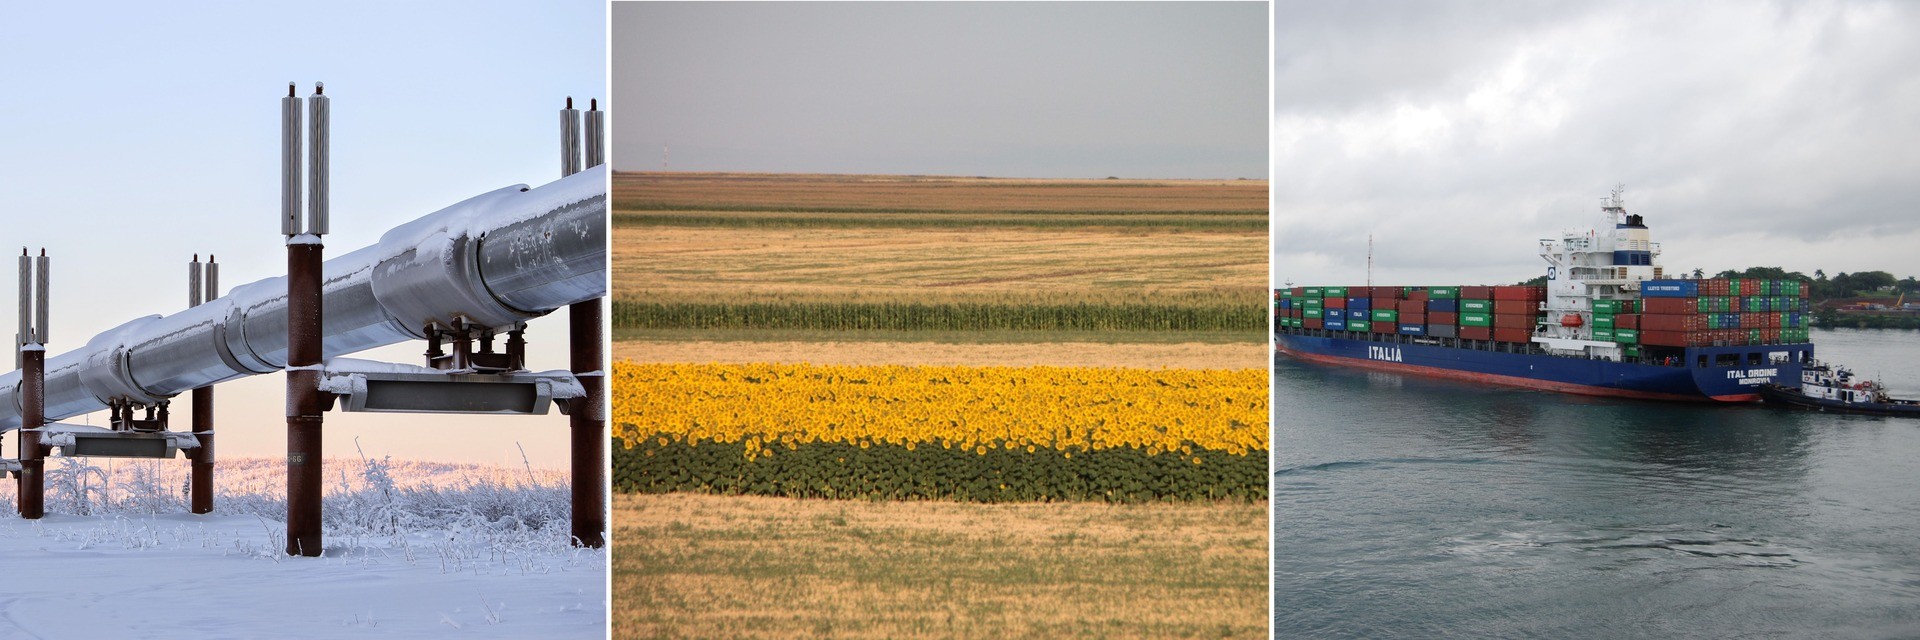 Trois images côte à côte : un pipeline en hiver, un grand champ de blé, un conteneur de bateau sur l'eau